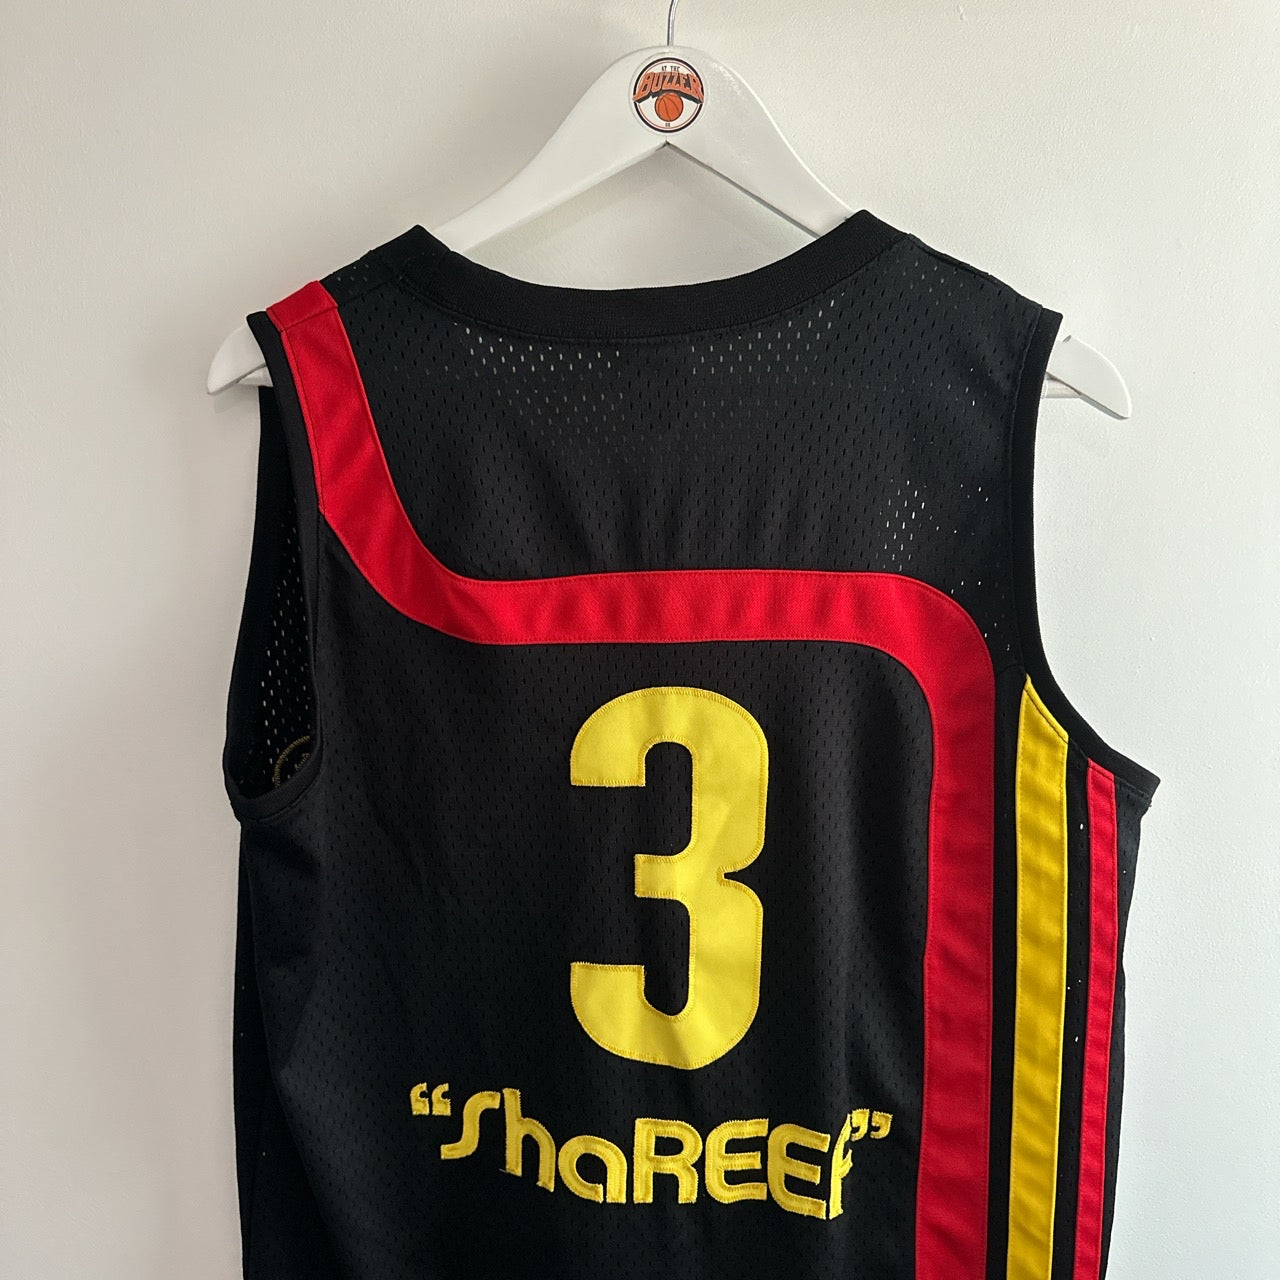 Atlanta Hawks Shareef Abdur Raheem swingman jersey - Nike (Medium) - At the buzzer UK